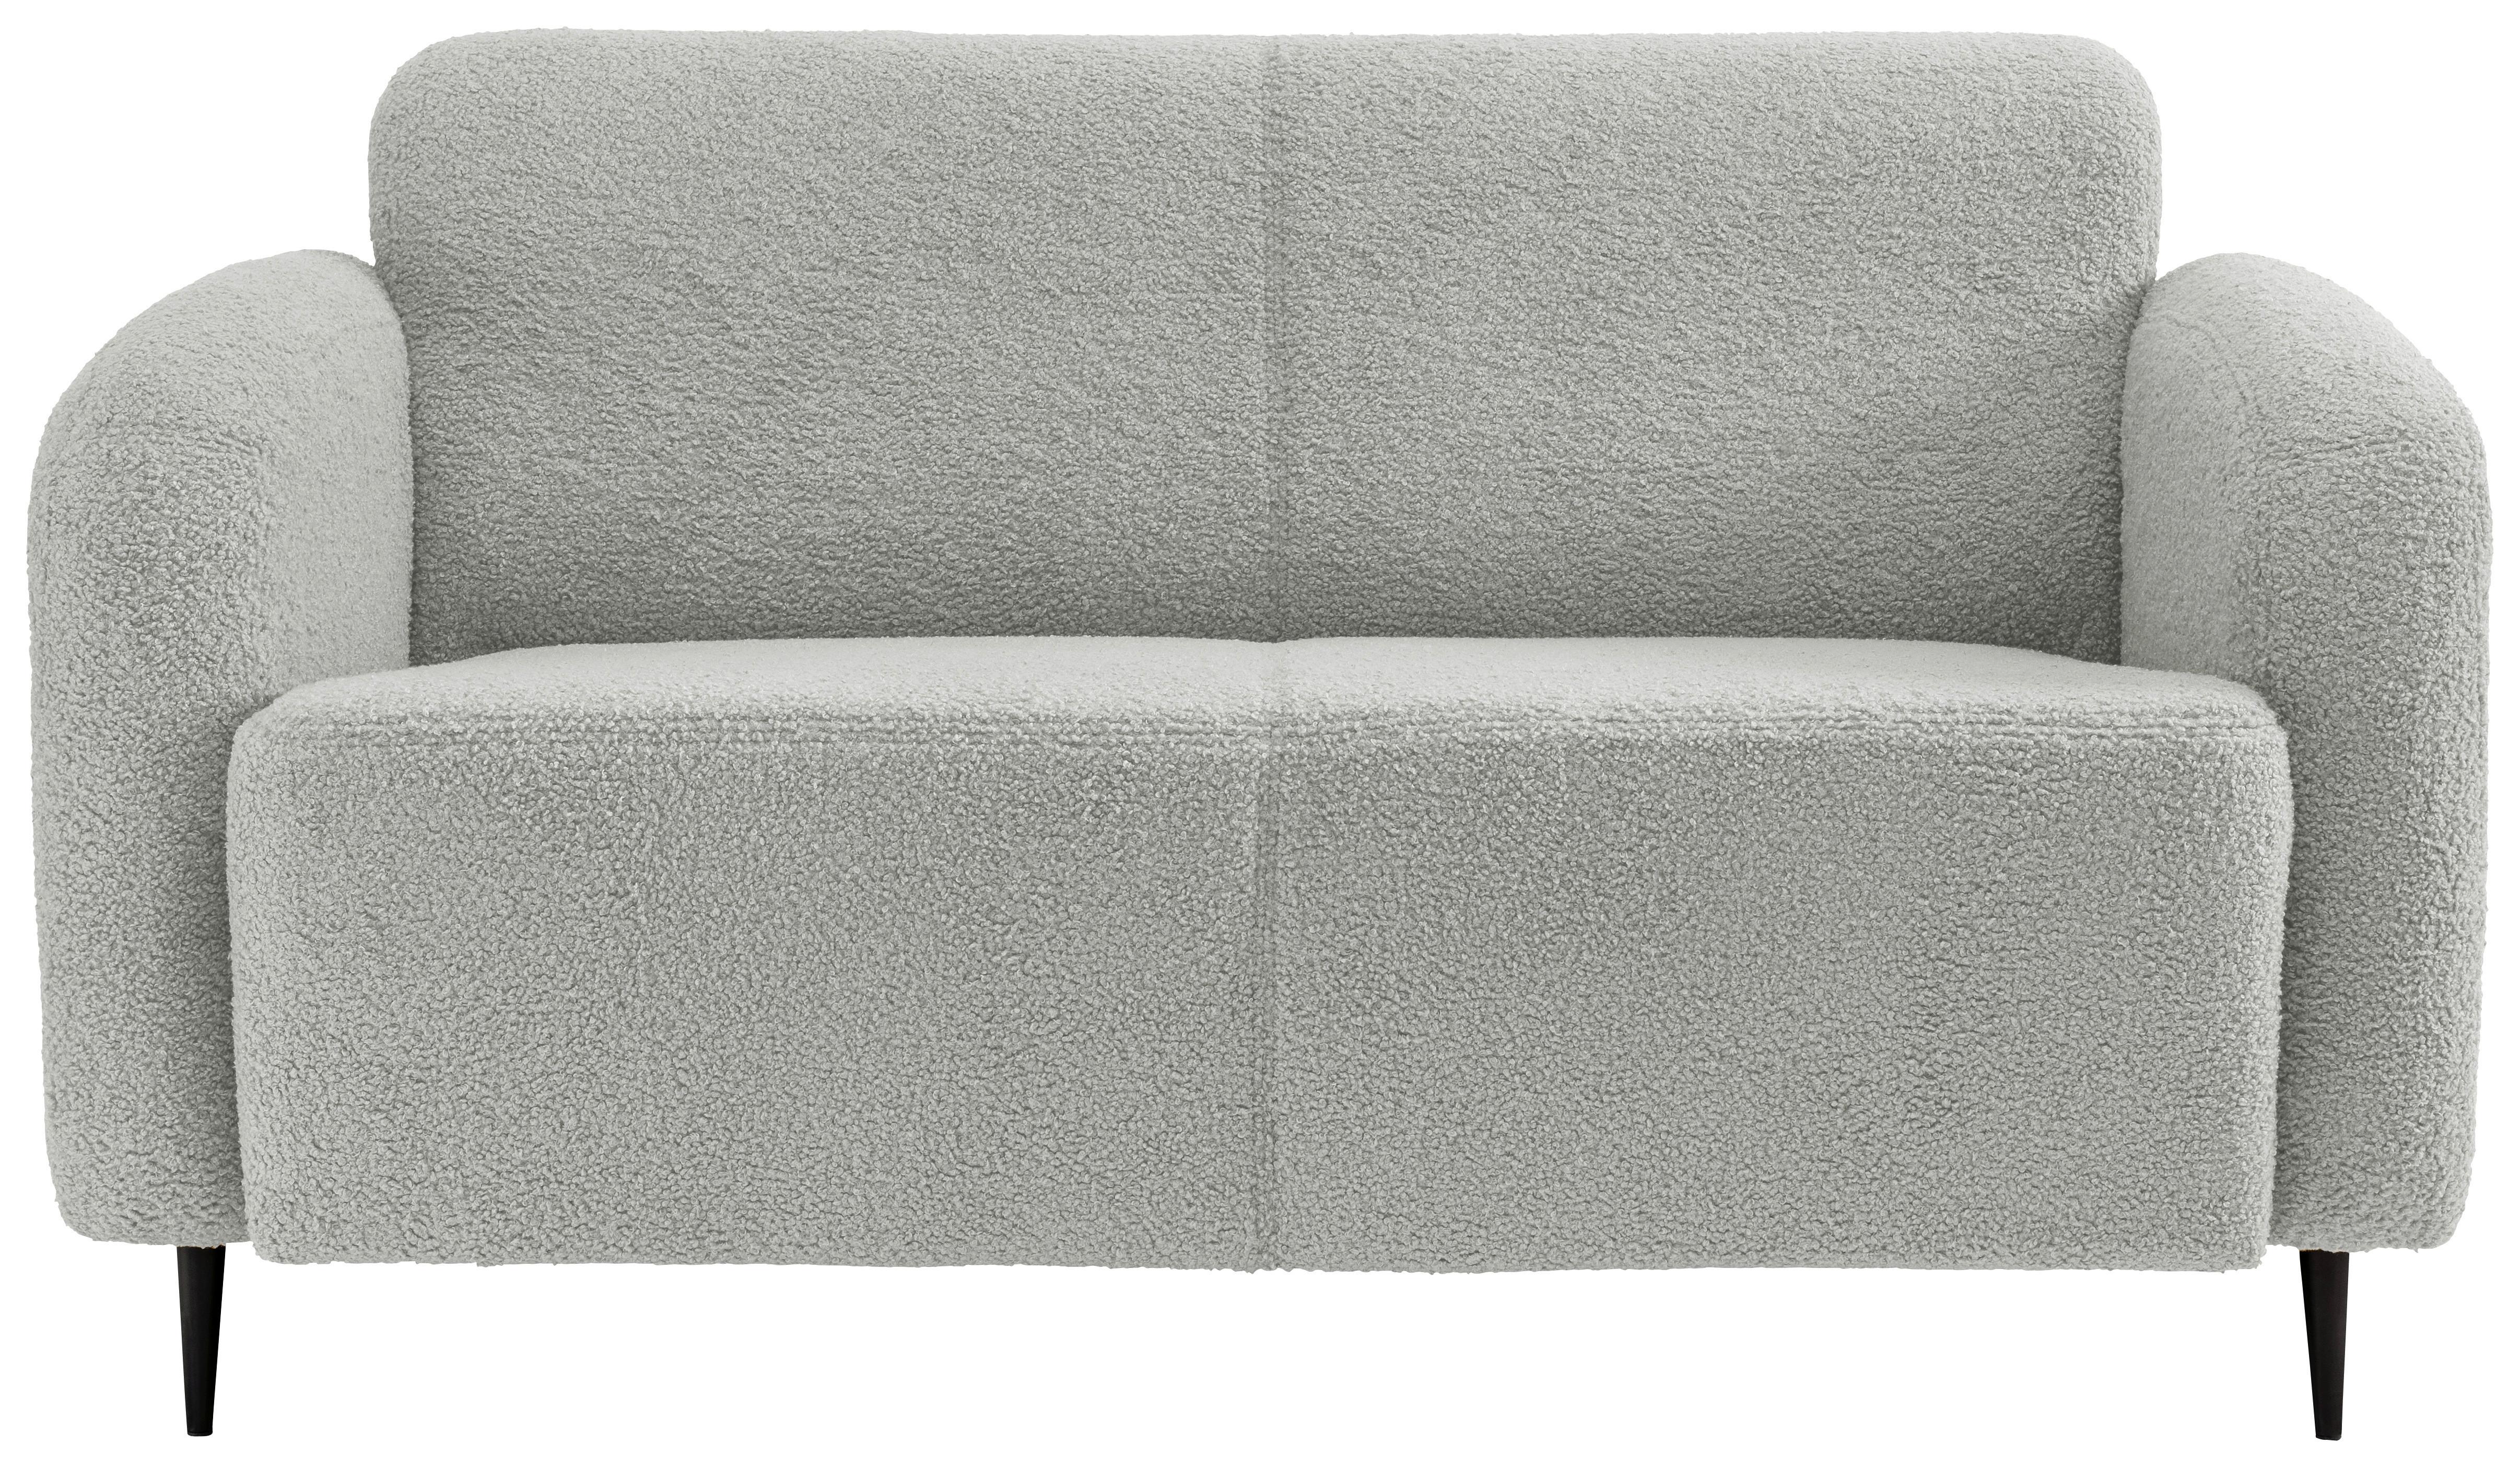 2-Sitzer-Sofa Marone Hellgrau Teddystoff - Hellgrau/Schwarz, MODERN, Textil/Metall (140/76/90cm) - Livetastic